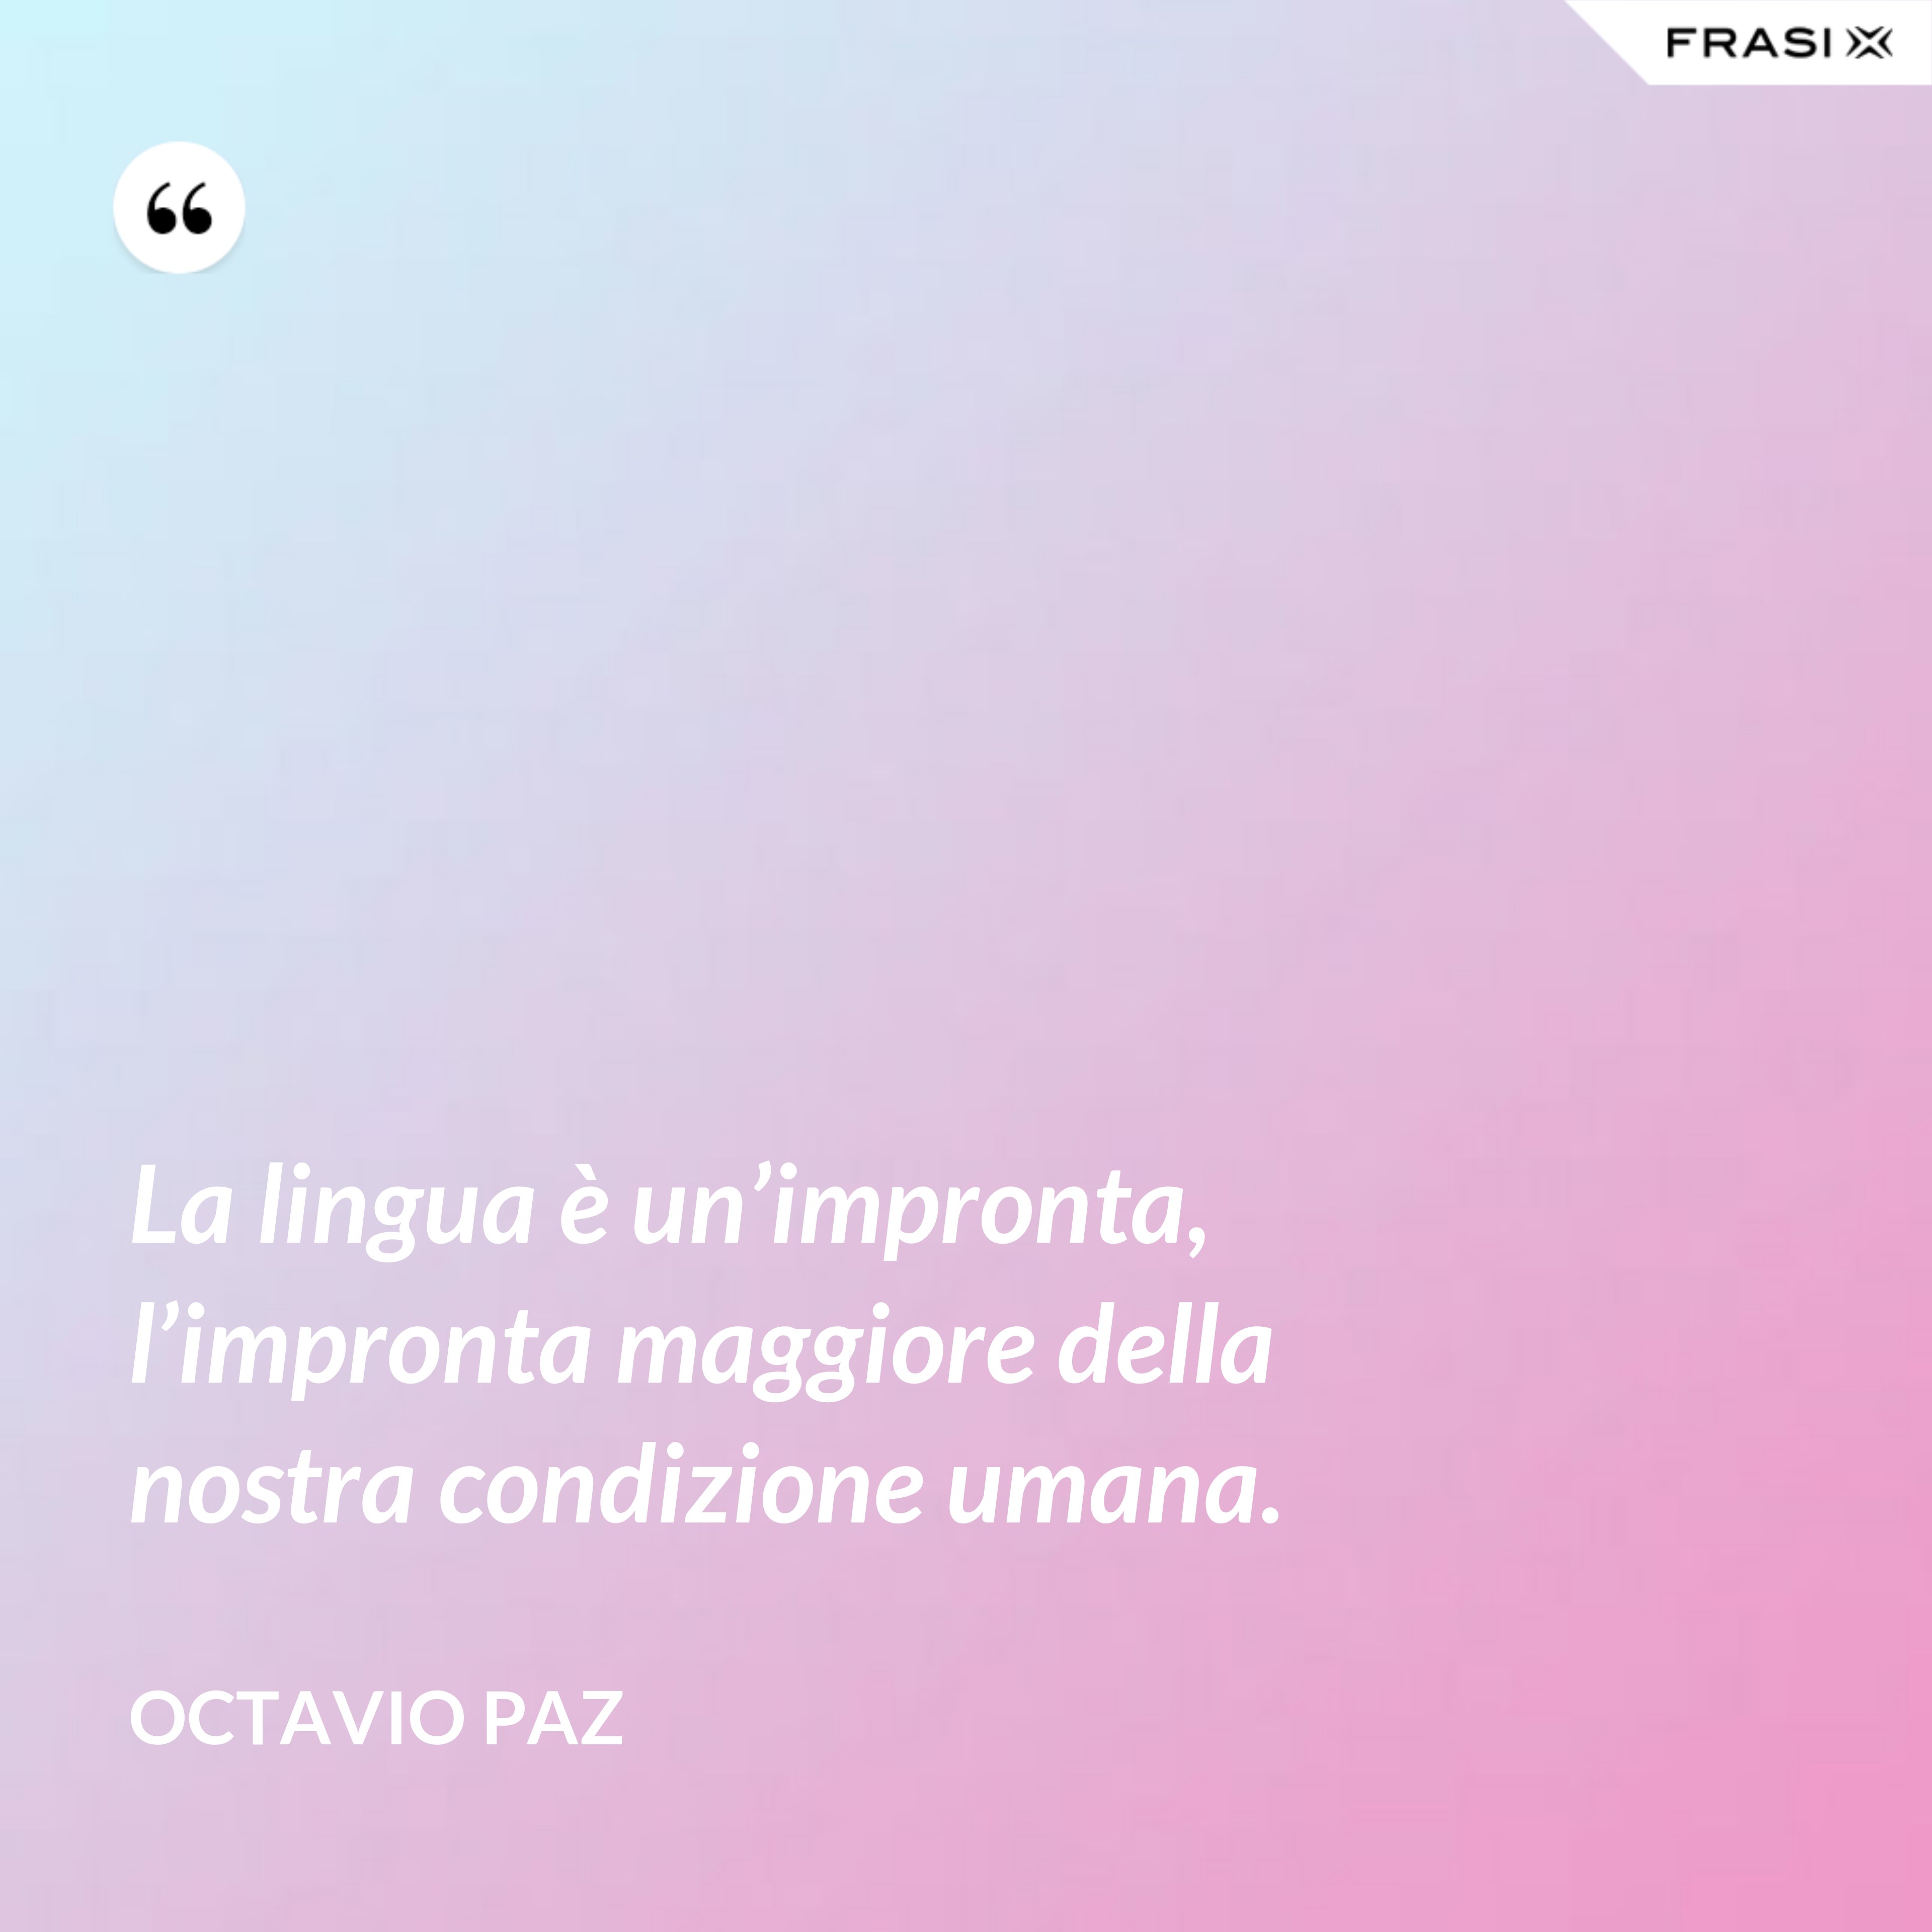 La lingua è un’impronta, l’impronta maggiore della nostra condizione umana. - Octavio Paz